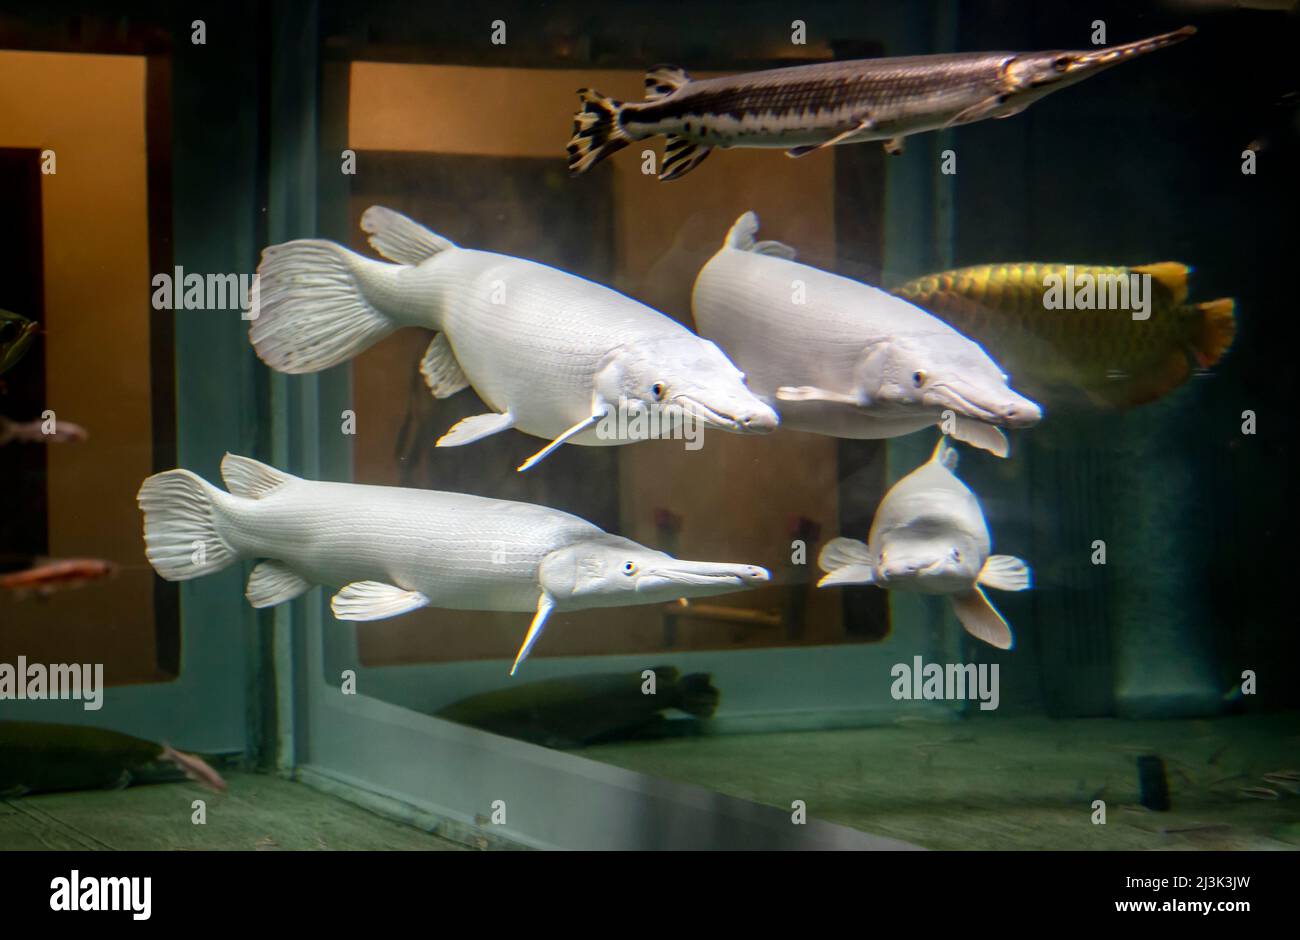 Pêchez dans un aquarium privé à Kyoto au Japon. Les quatre blancs sont probablement albino Pikes, mais cela n'a pas pu être confirmé; Kyoto, Japon Banque D'Images